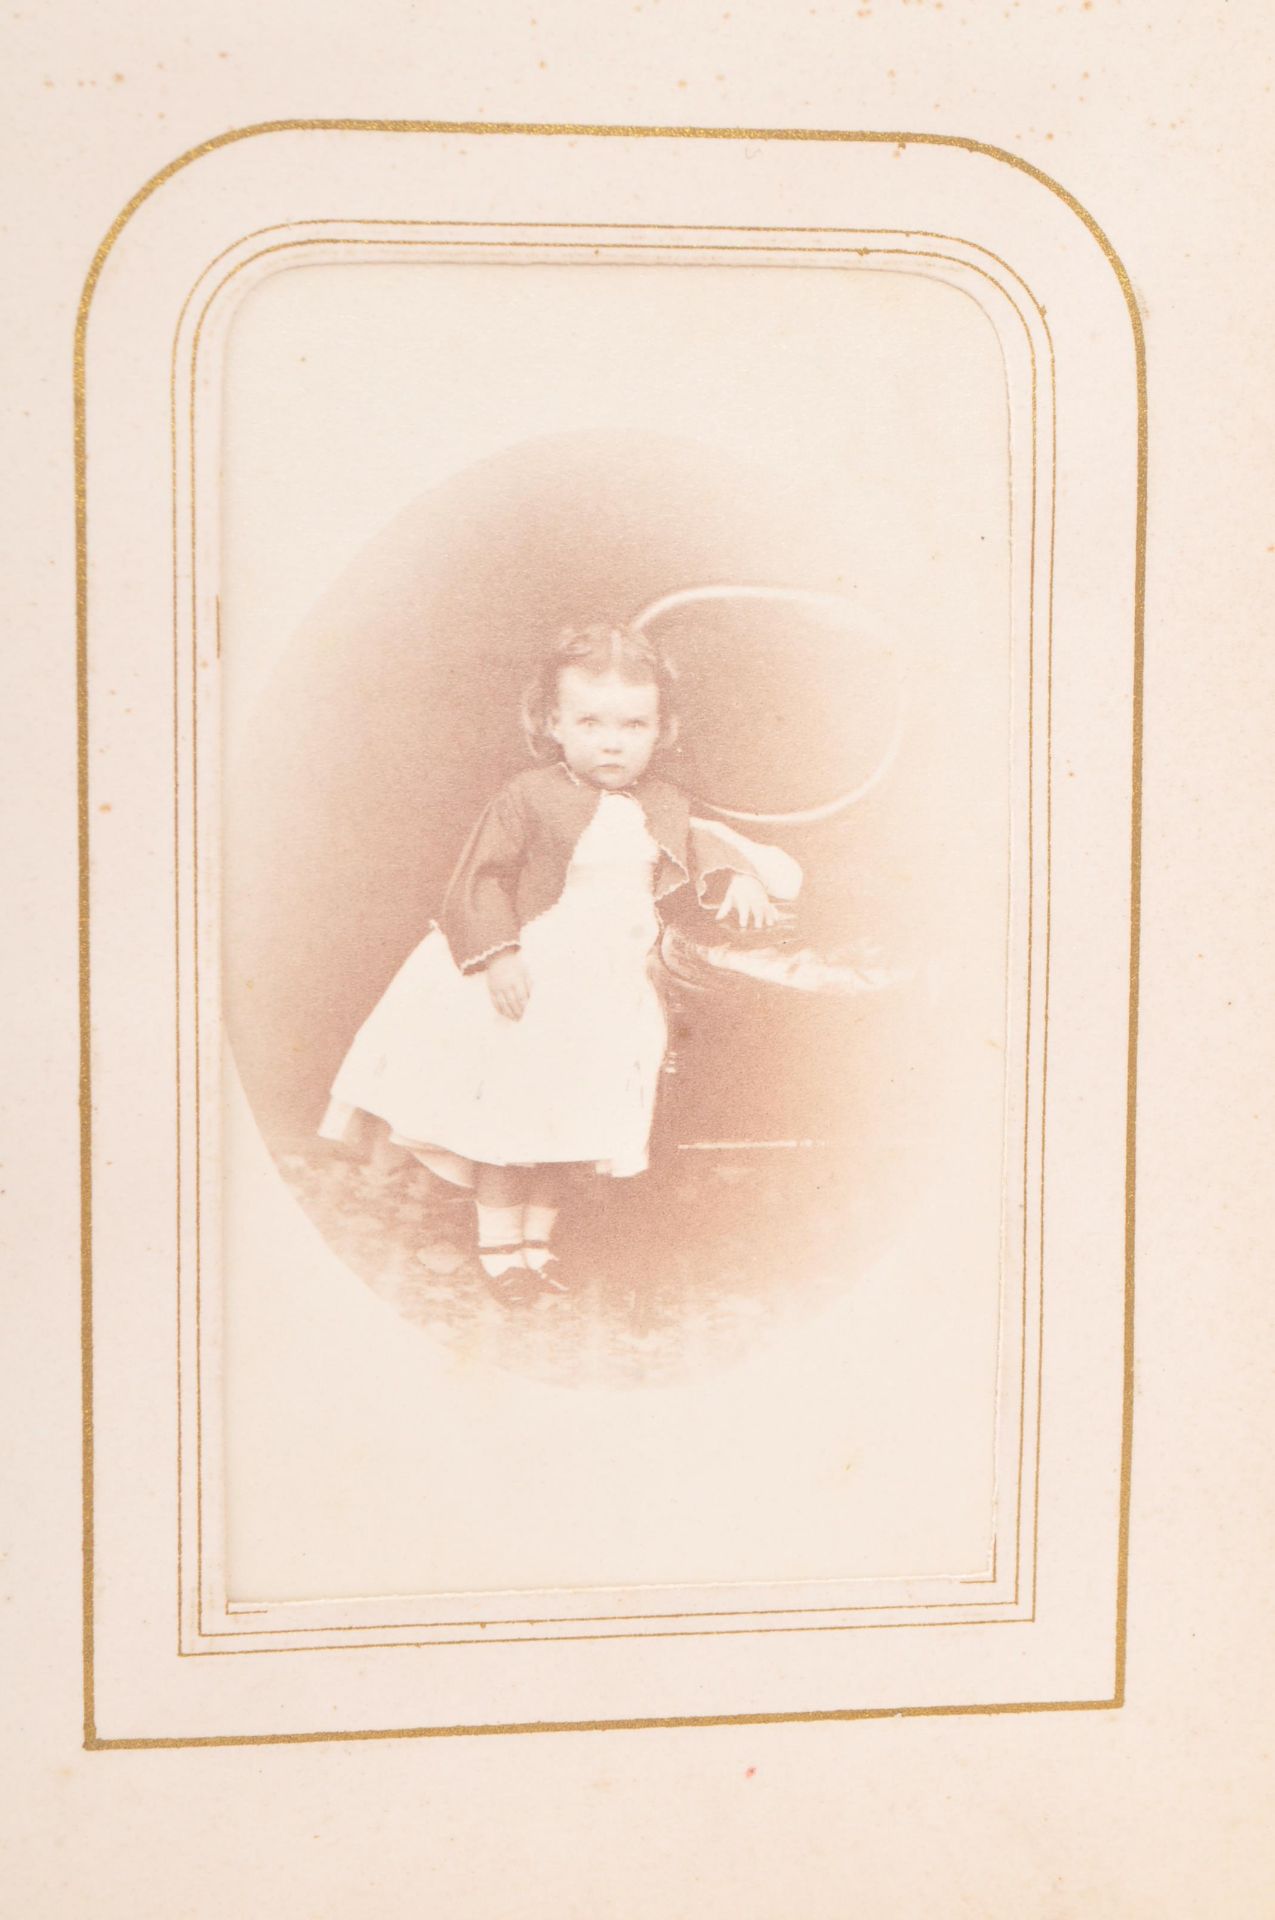 VICTORIAN 1800S ALBUM OF PHOTOGRAPHS INCL. WILLIAM KILBURN - Image 10 of 14